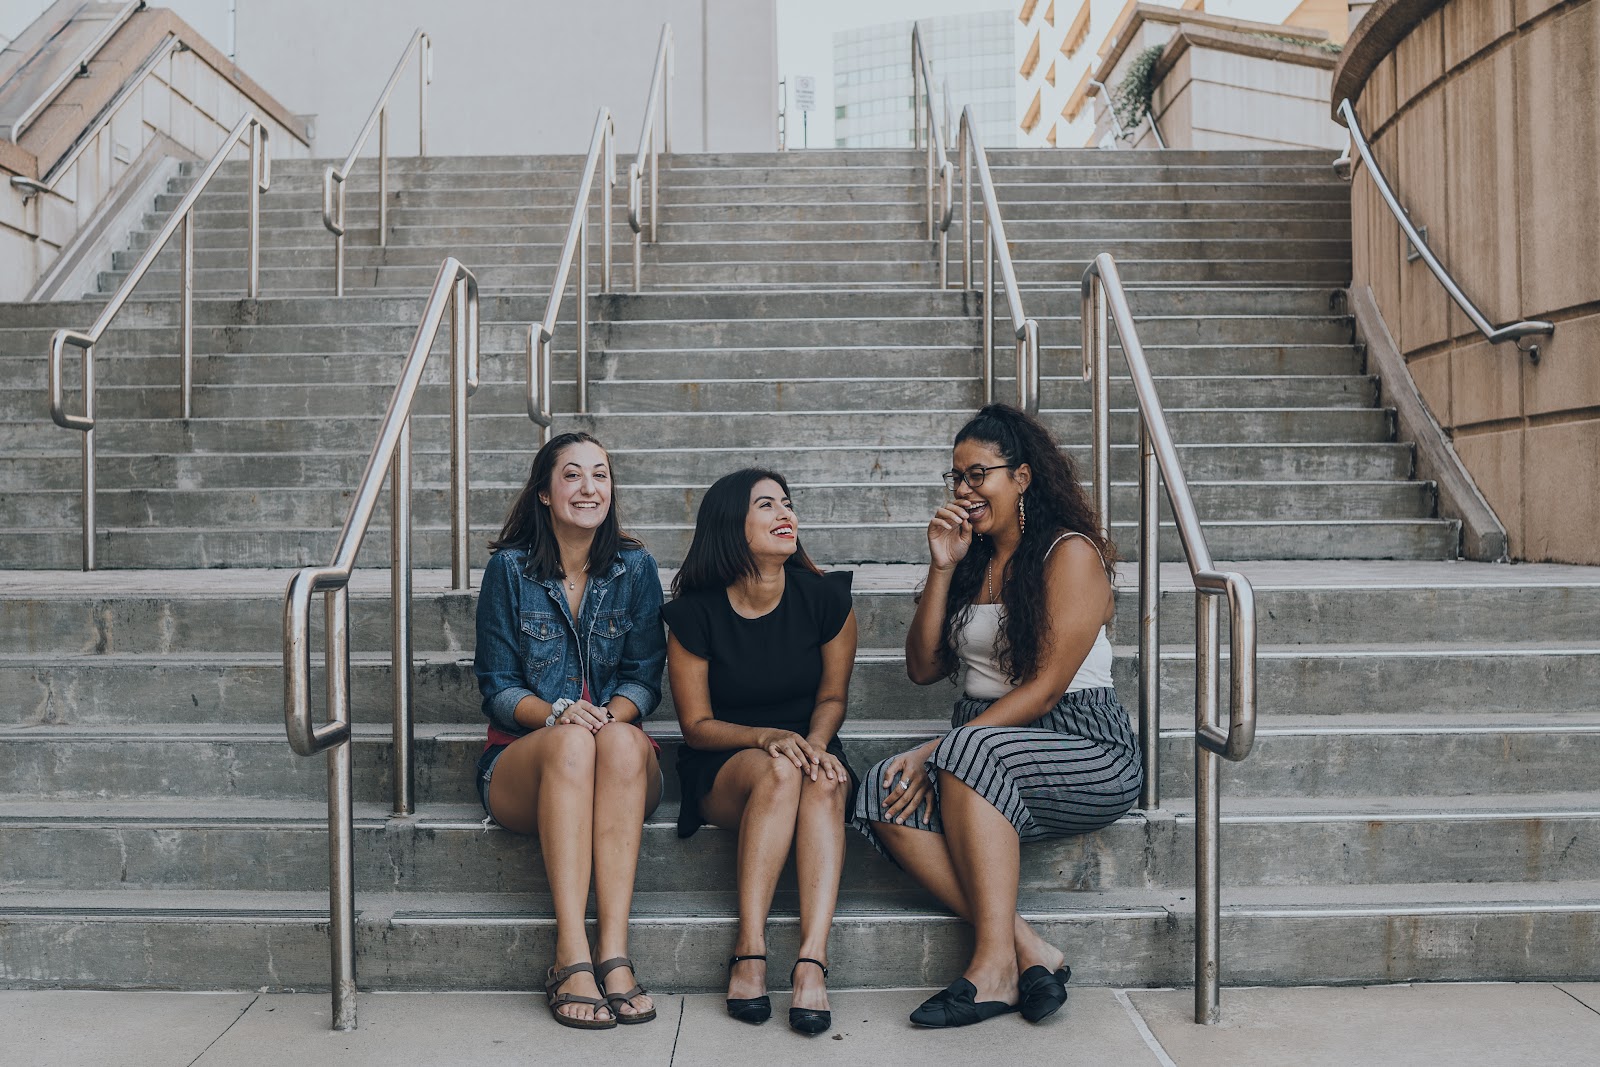 Tres chicas de entre los 25 y 30 años, sentadas en el segundo escalón más bajo de unas escaleras. Visten juvenil y para un clima cálido. Tiene una conversación y ríen